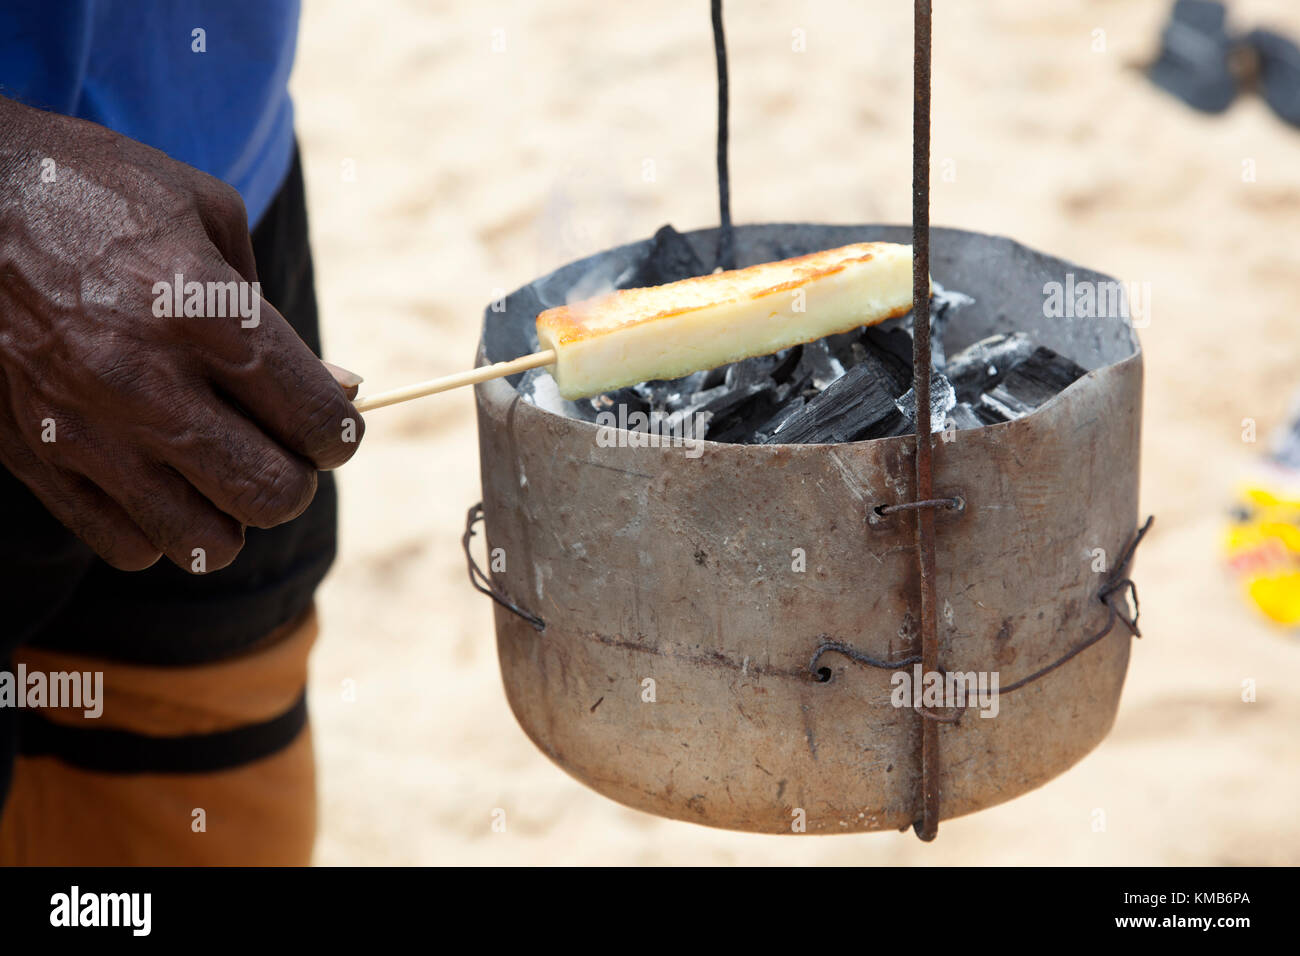 Queijo Coalho Grelhado: kebabed coalho formaggio alla griglia su secchielli riempiti con carbone caldo, un beach snack in Trancoso nello stato di Bahia, in Brasile. Foto Stock